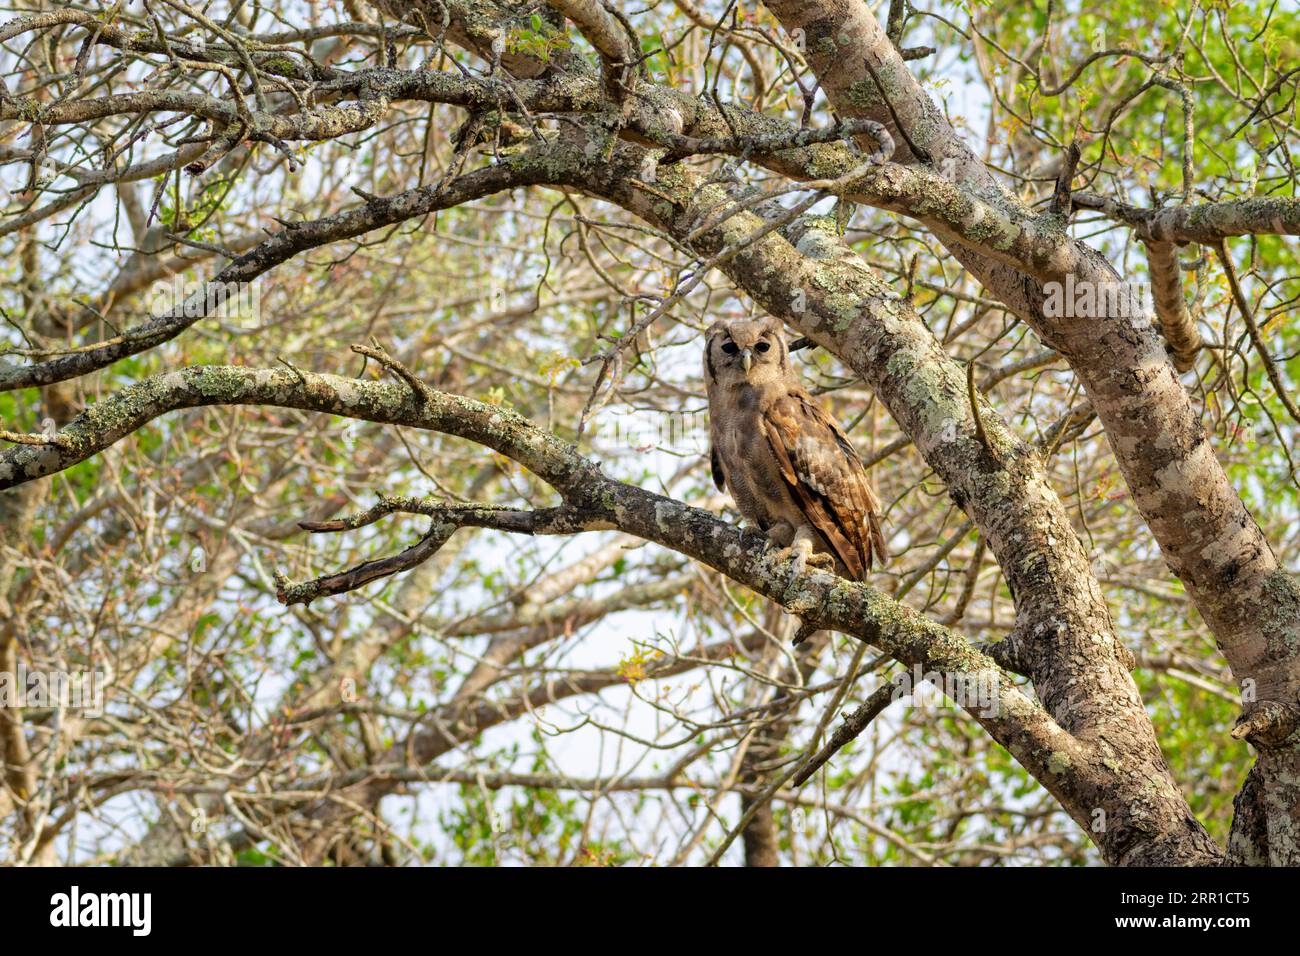 La chouette aigle de Verreaux (Bubo lacteus) perchée sur une branche, camouflée, parc national Kruger, Afrique du Sud. Banque D'Images